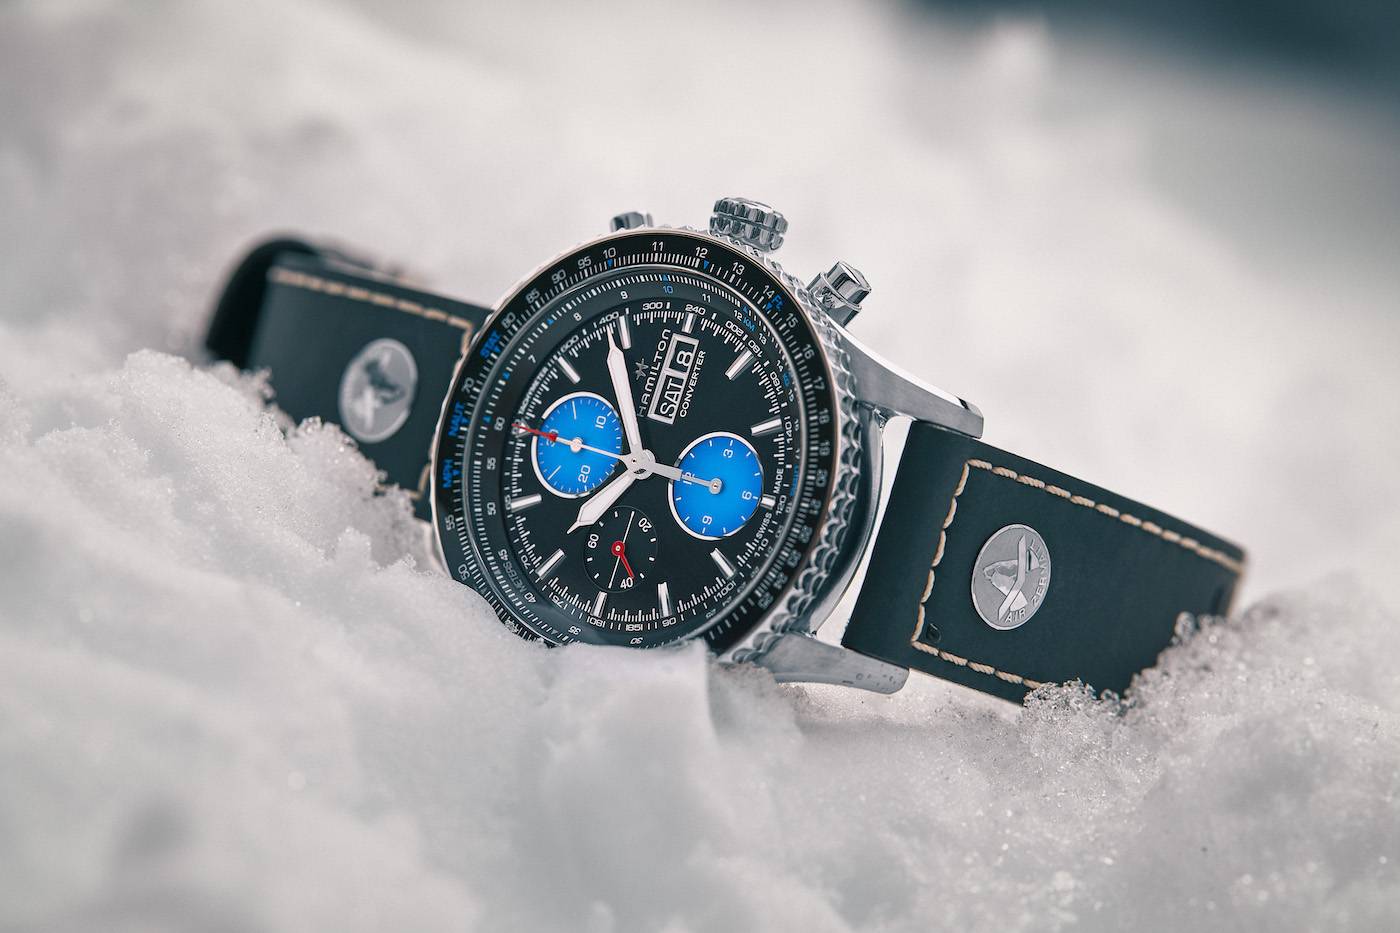 Presentando el reloj especial de Hamilton para Air Zermatt